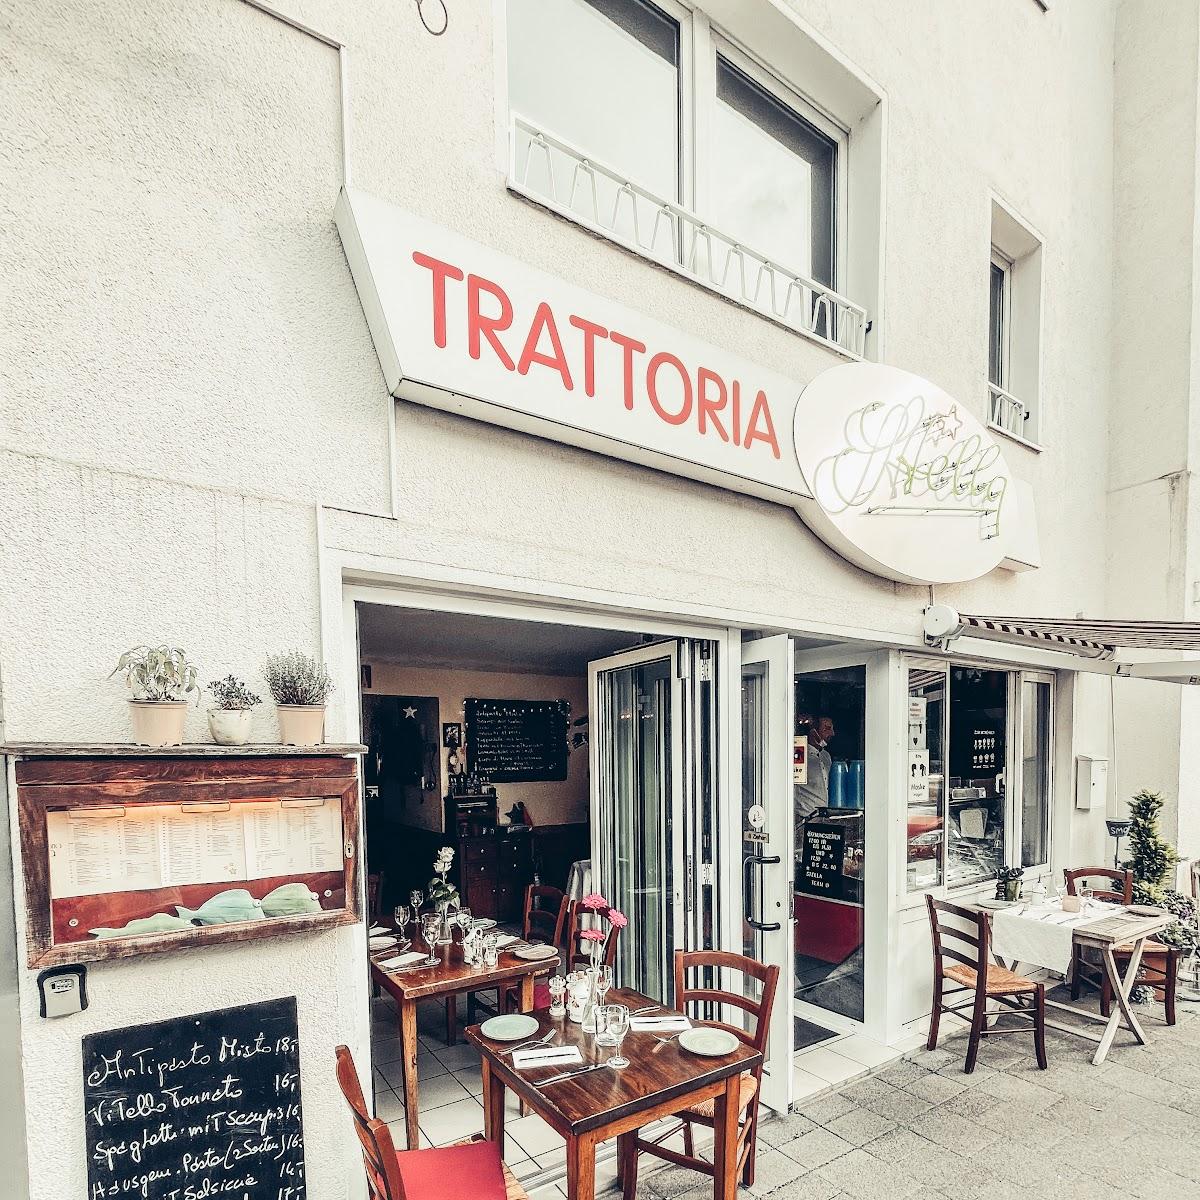 Restaurant "Trattoria Stella" in Köln